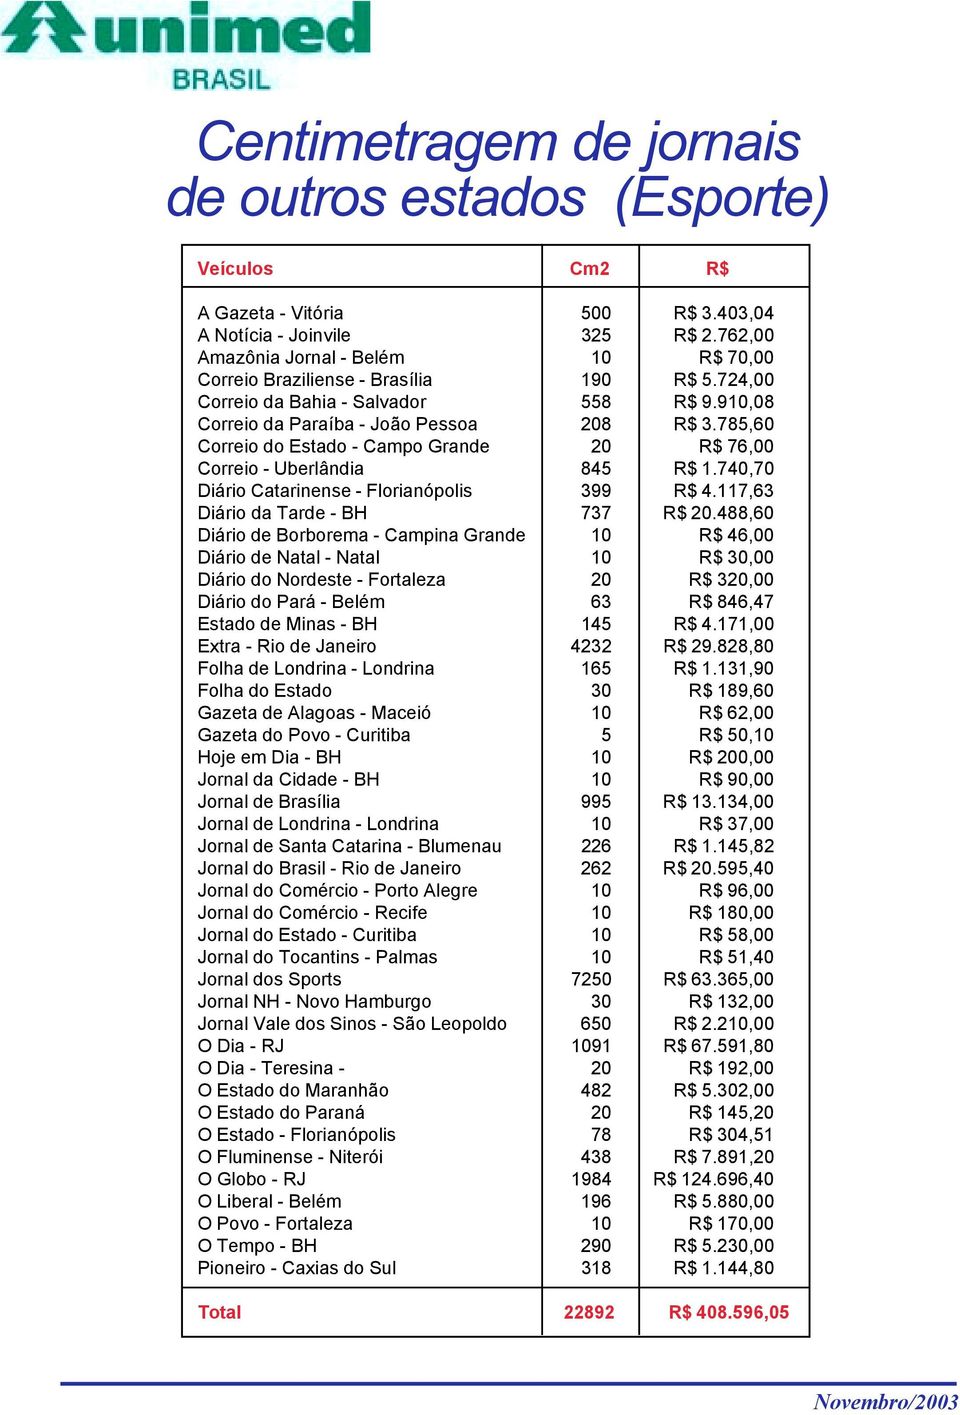 785,60 Correio do Estado - Campo Grande 20 R$ 76,00 Correio - Uberlândia 845 R$ 1.740,70 Diário Catarinense - Florianópolis 399 R$ 4.117,63 Diário da Tarde - BH 737 R$ 20.